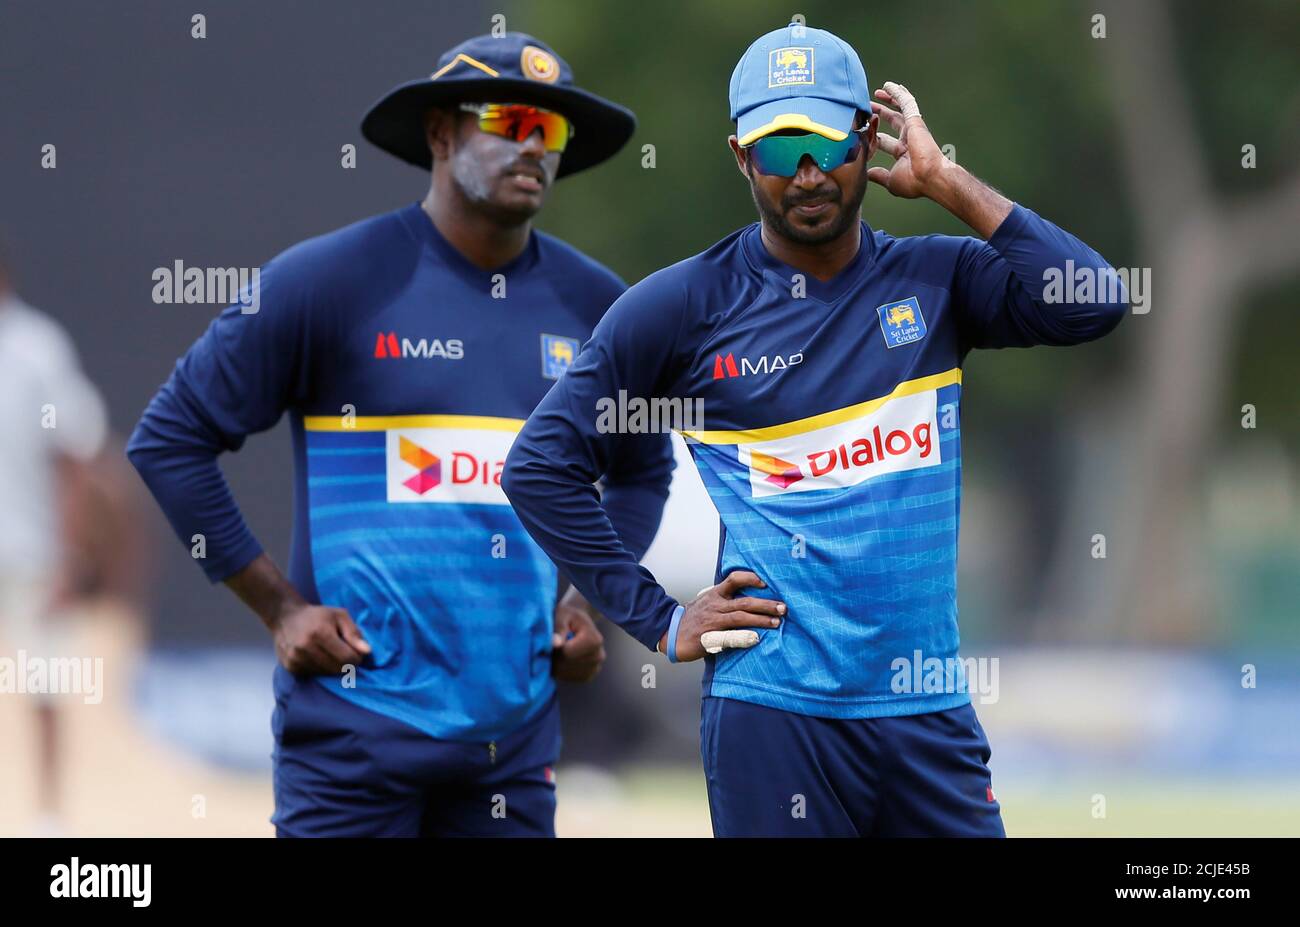 Sri Lanka Cricket Cap By MAS 2019 